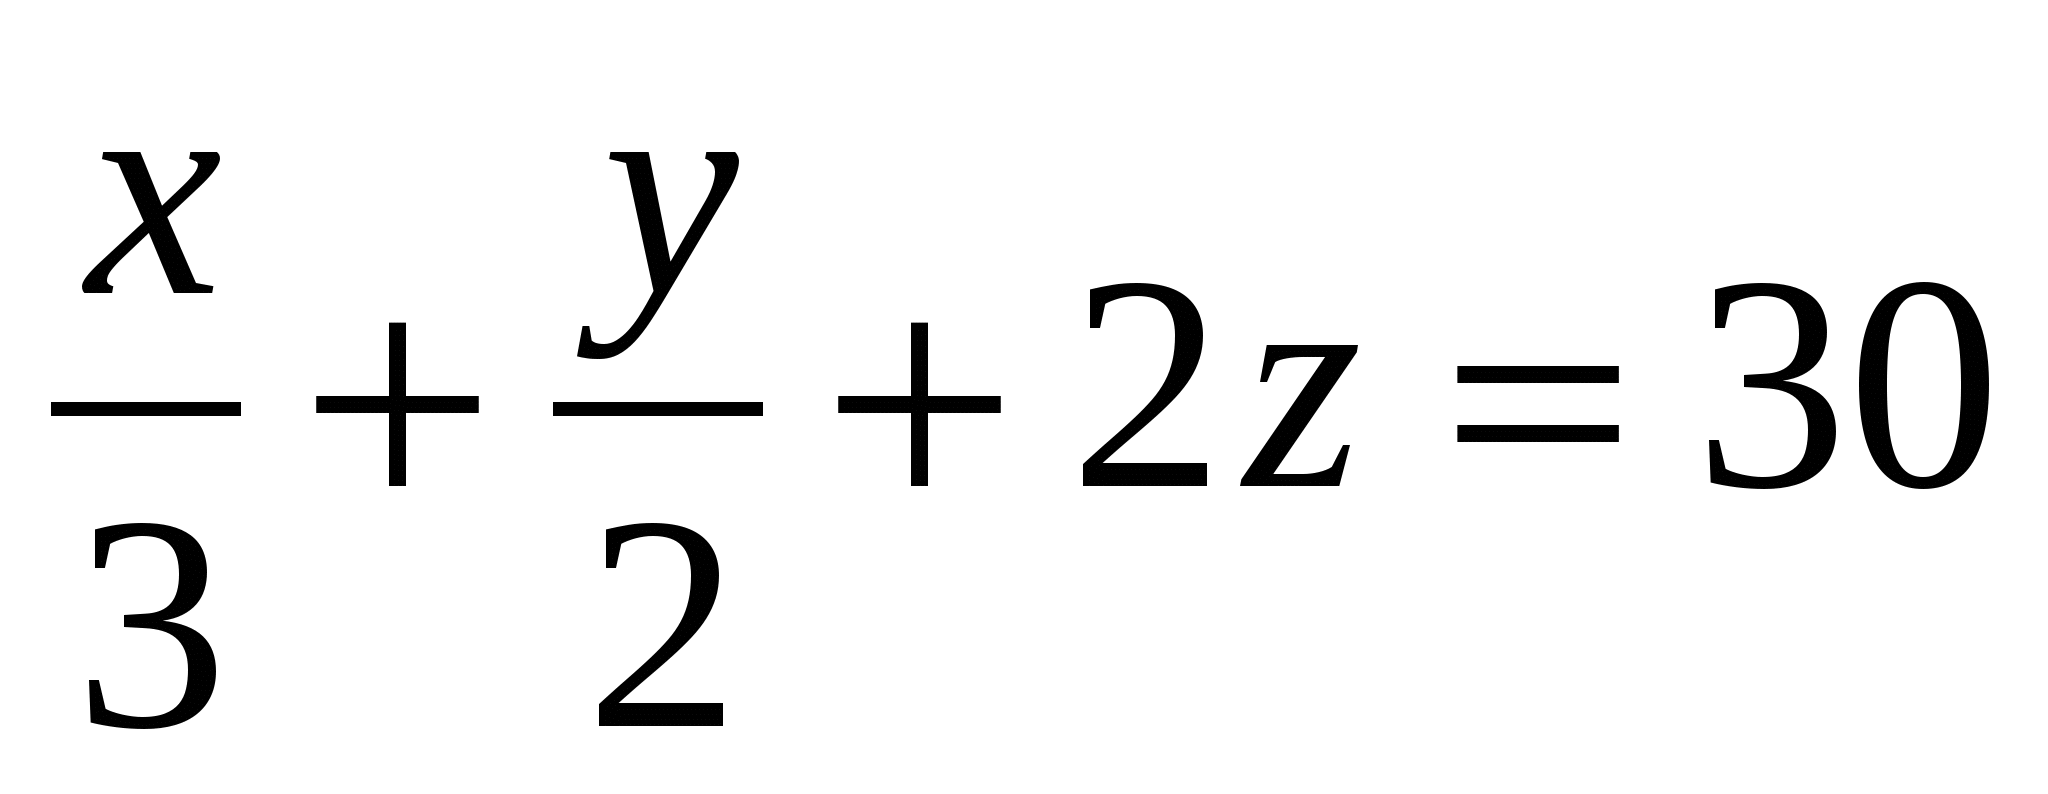 Статья. Линейное уравнение с двумя переменными